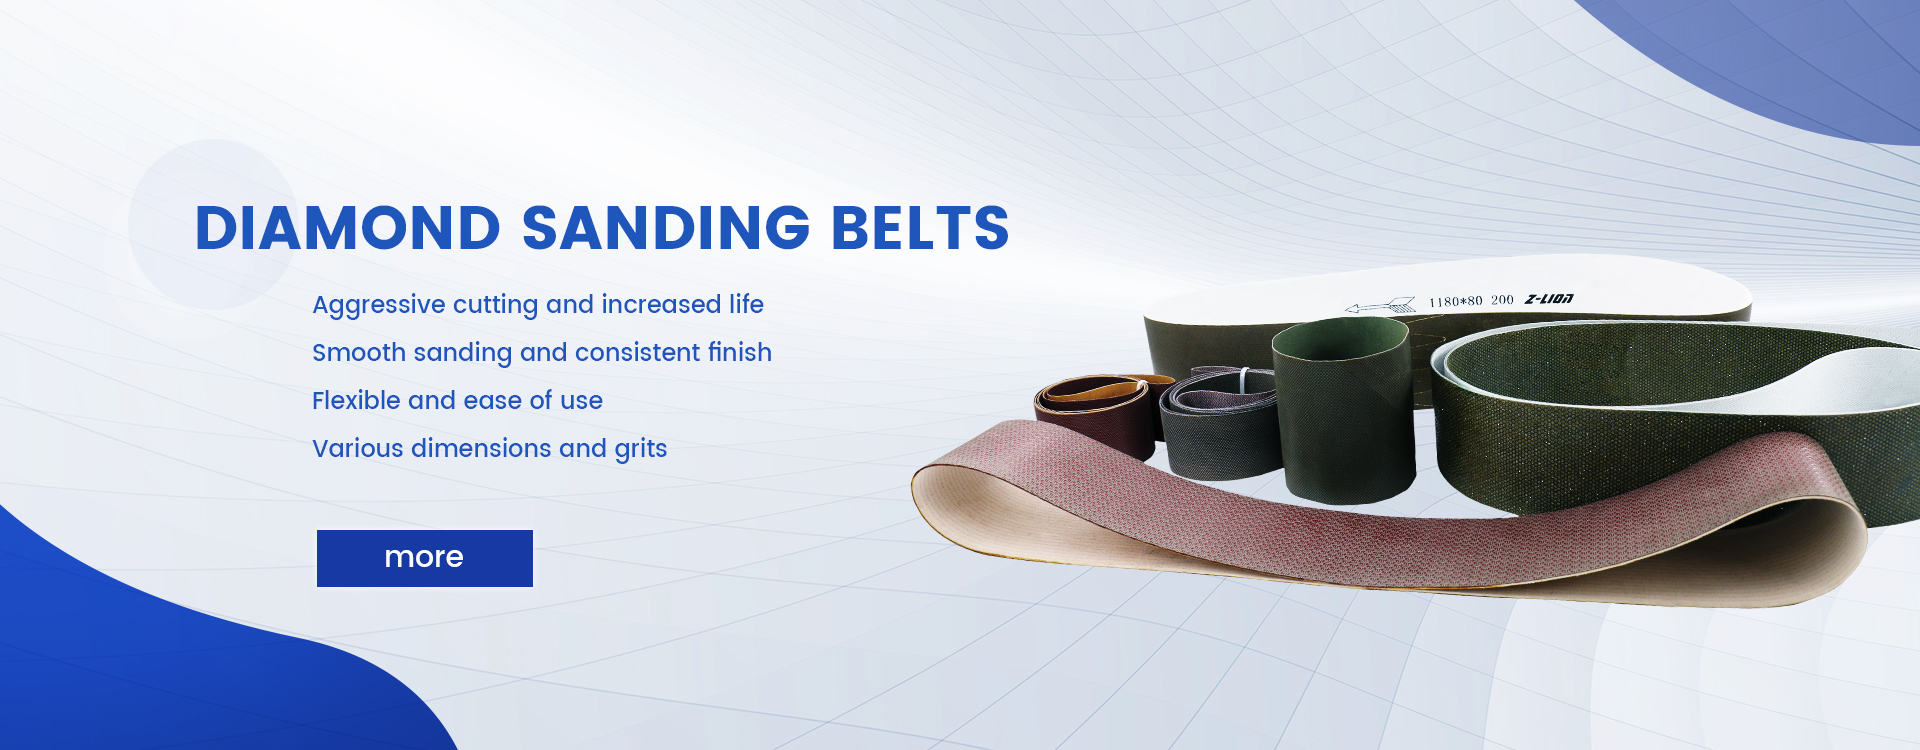 brilyante sanding belt